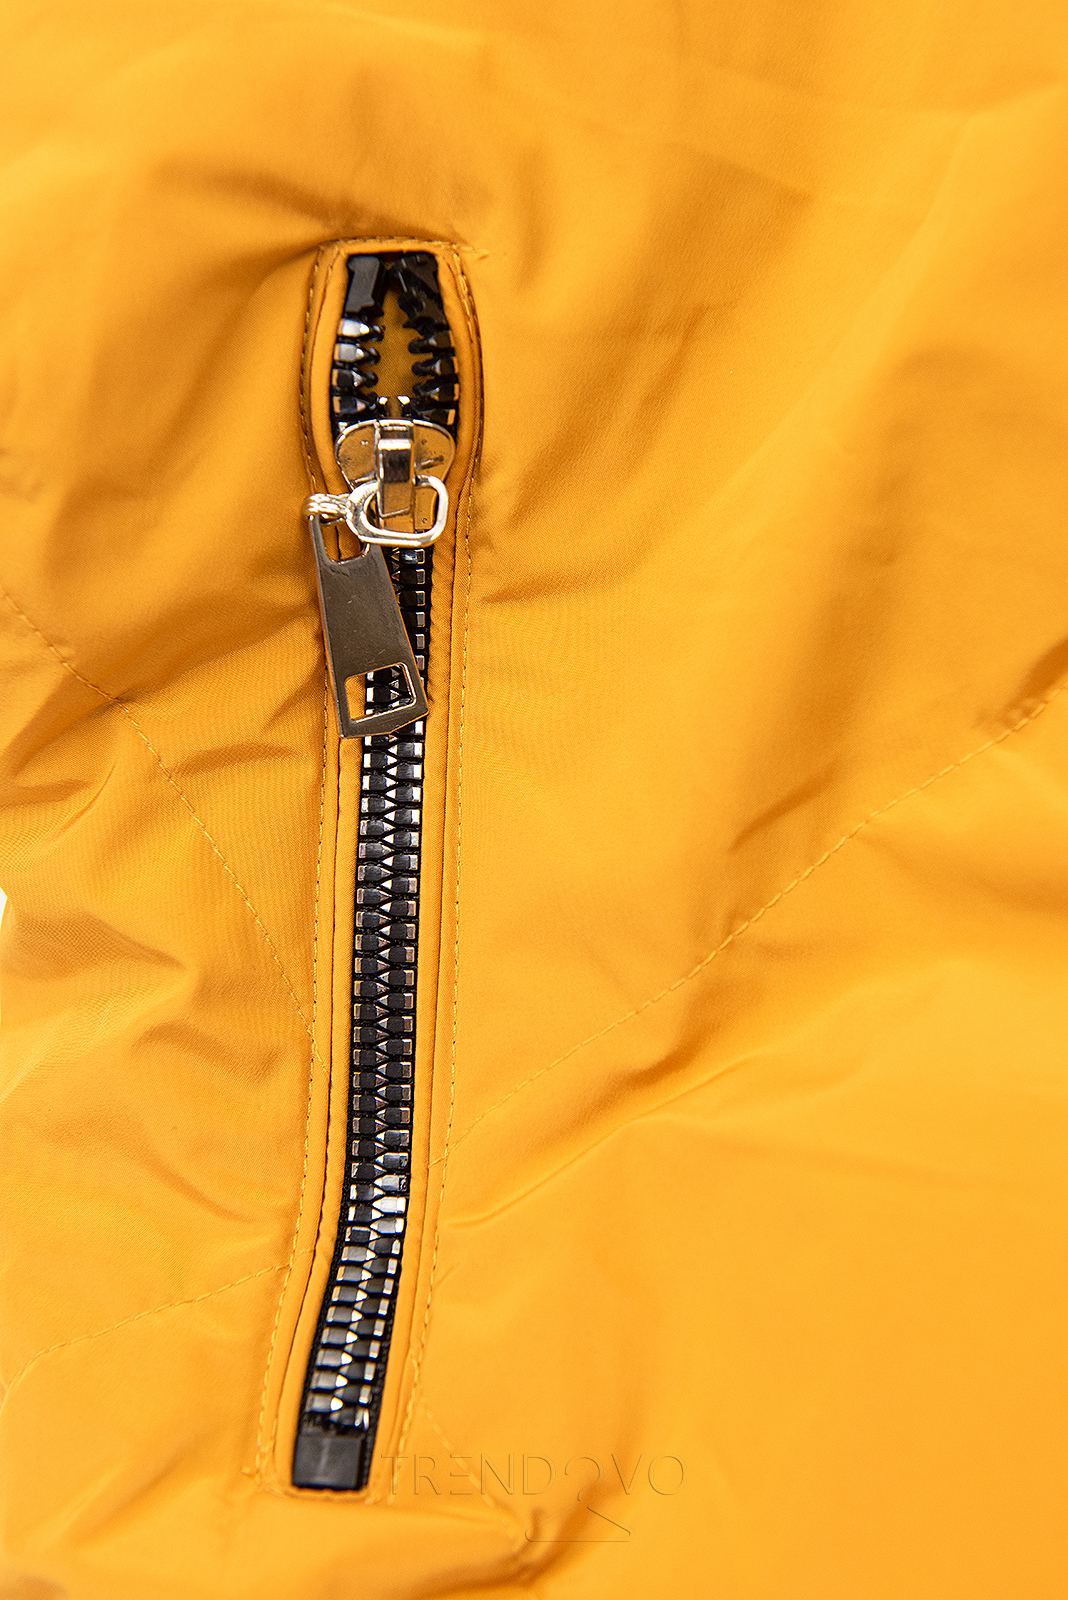 Žltá/karamelová zimná bunda so strieborným lemom